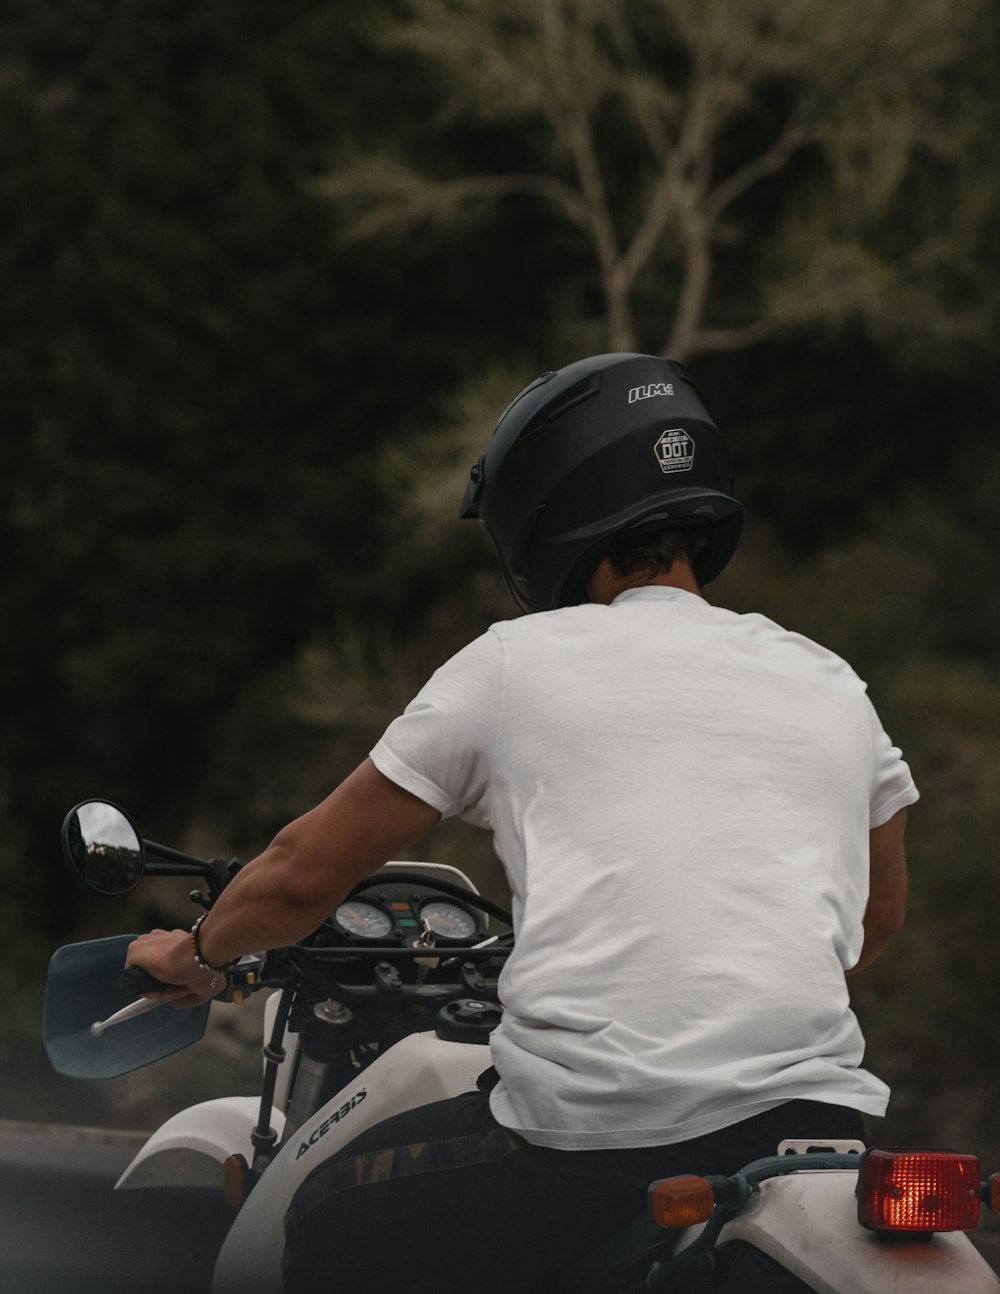 man in white t-shirt riding motorcycle